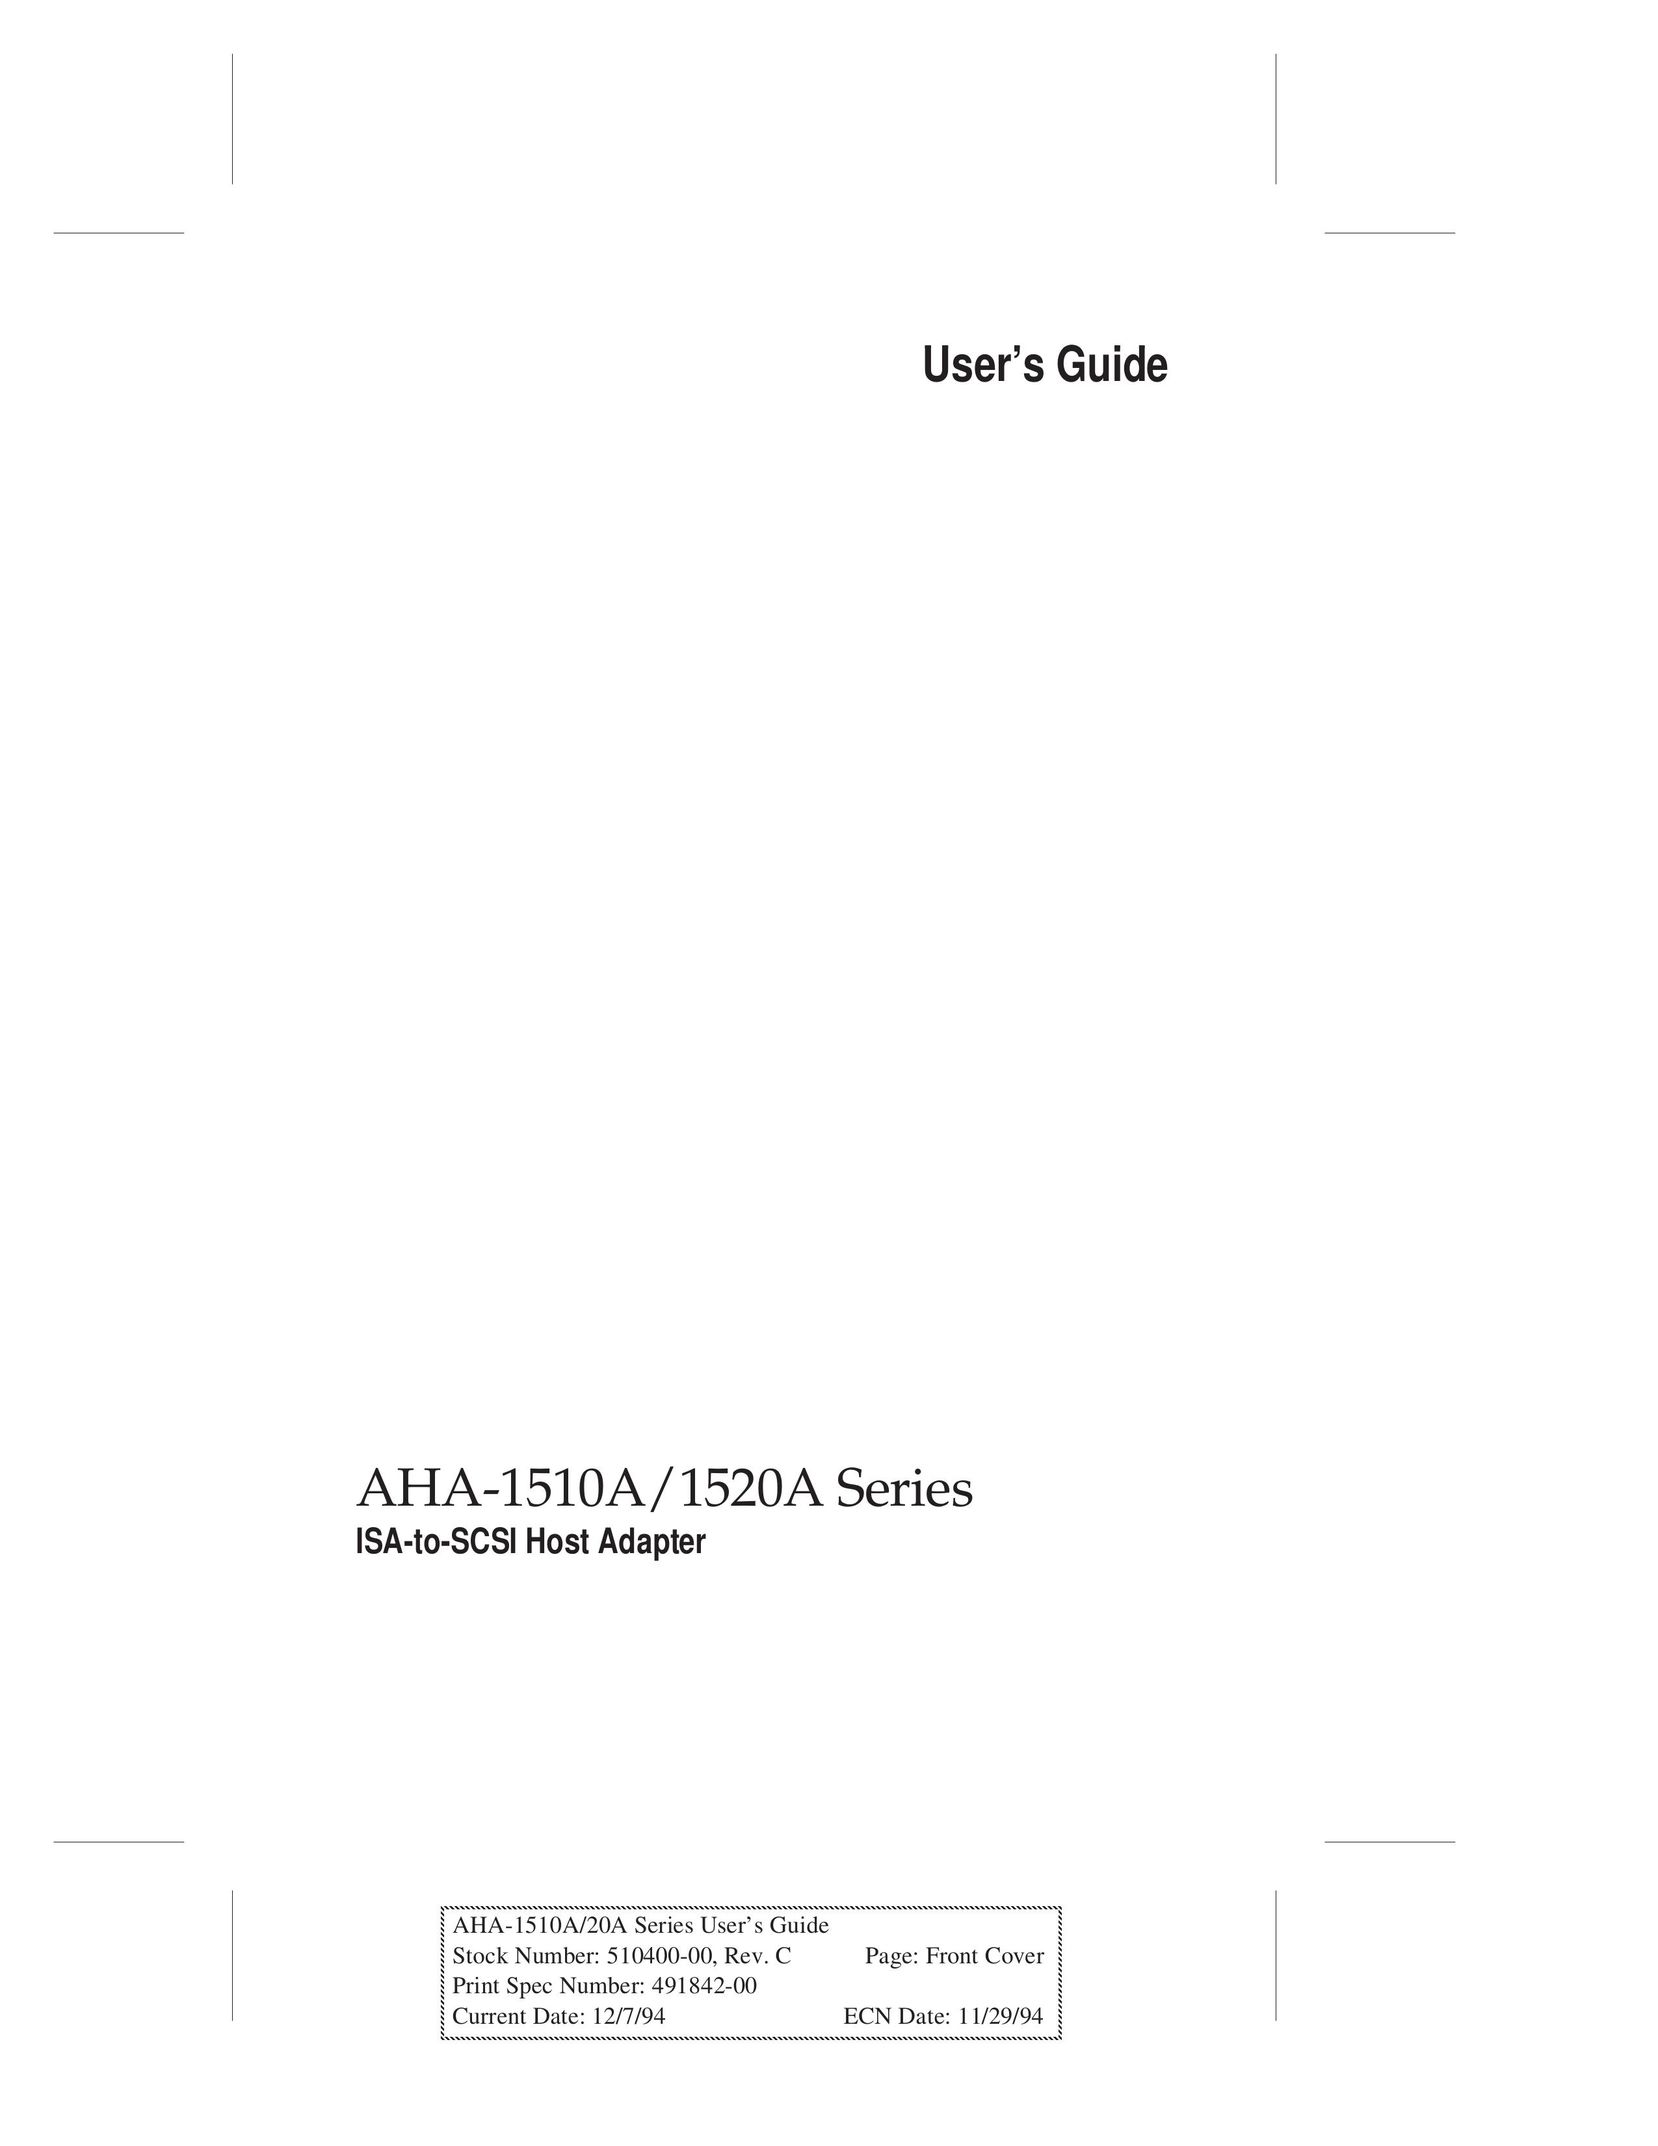 Adaptec AHA-1520A Network Card User Manual